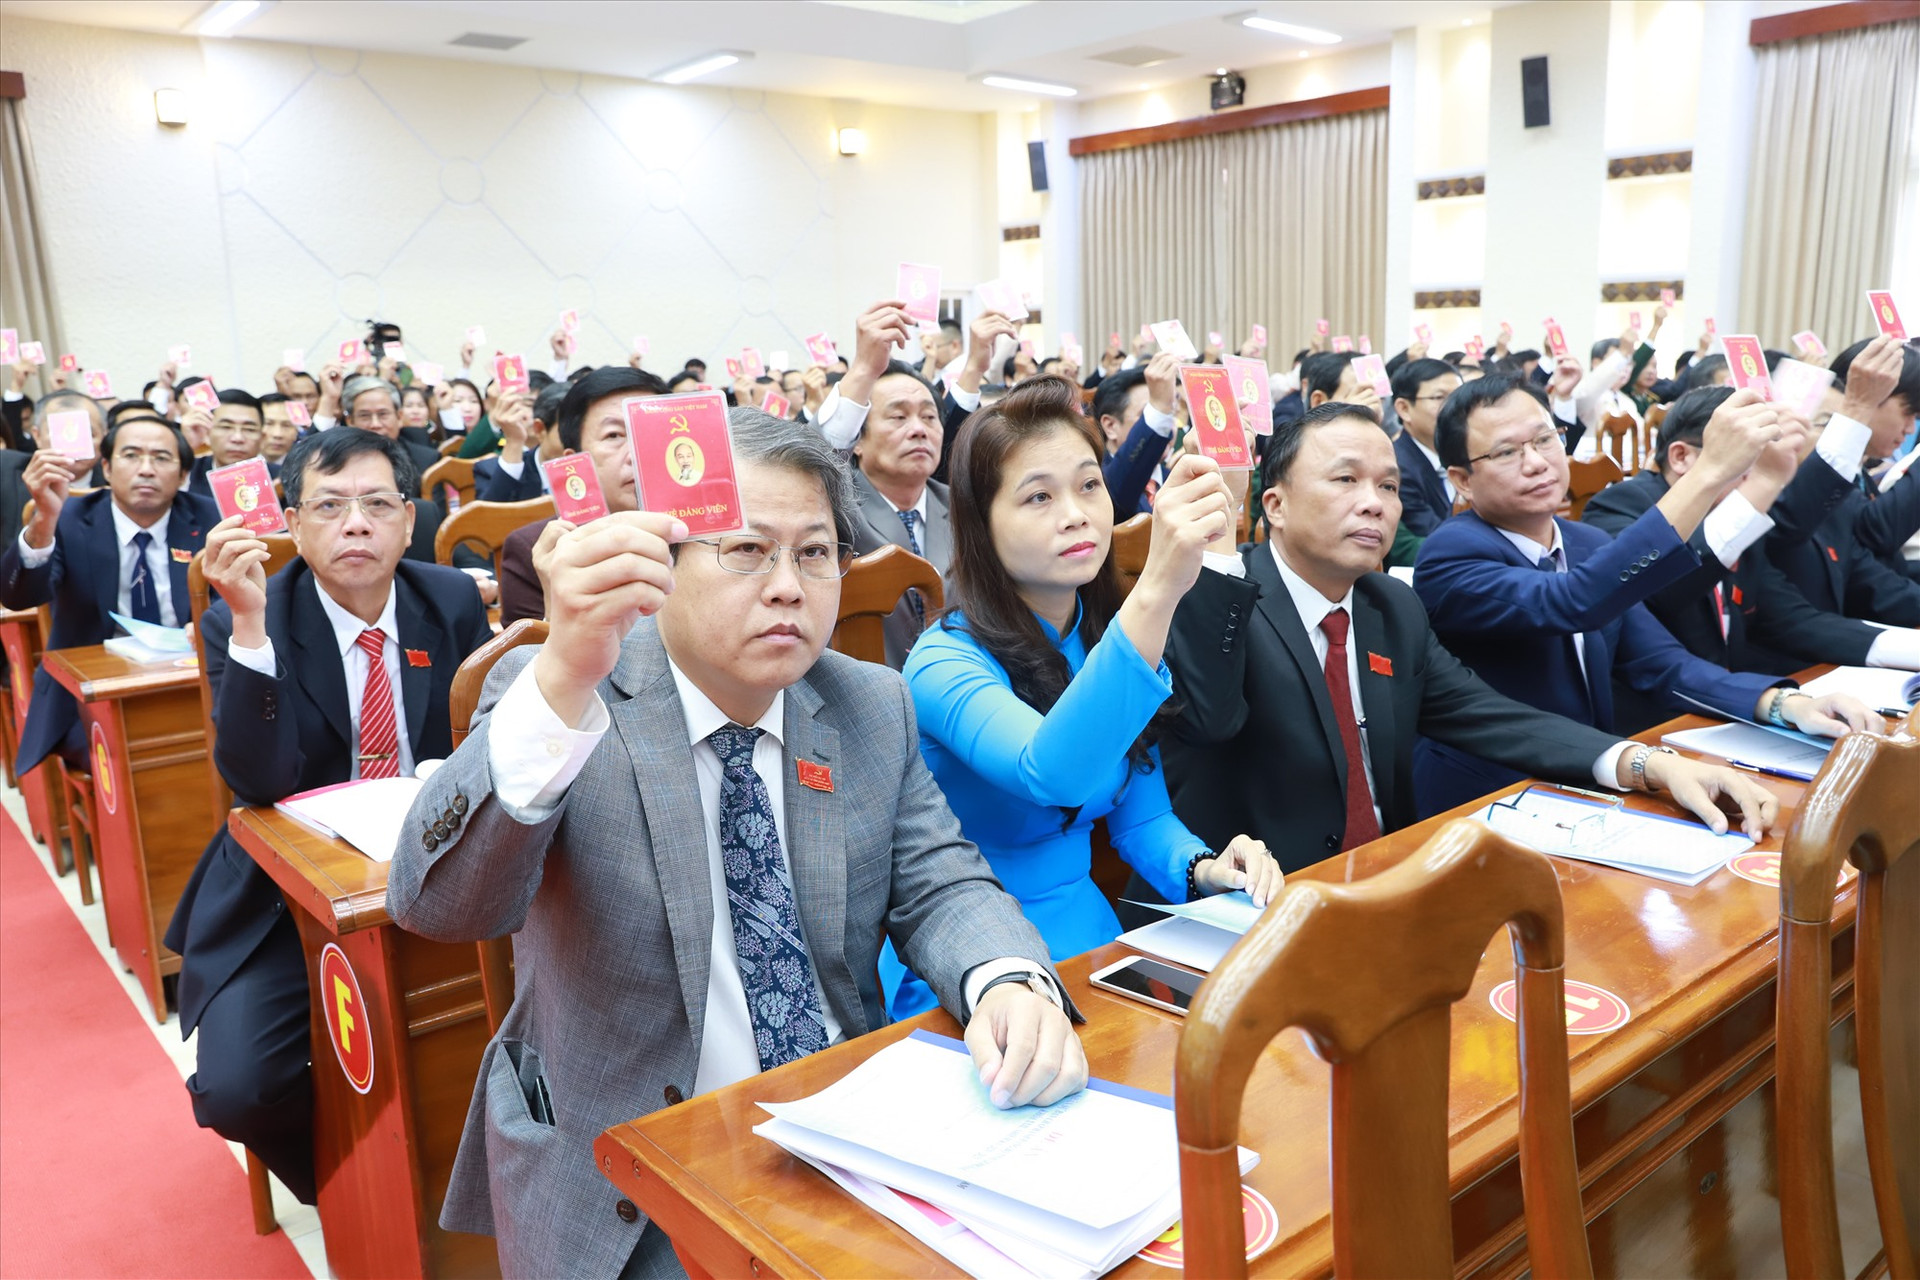 Đại biểu biểu quyết các nhóm chỉ tiêu tại Đại hội đại biểu Đảng bộ tỉnh Quảng Nam lần thứ XXII (nhiệm kỳ 2020 - 2025). Ảnh: T.CÔNG